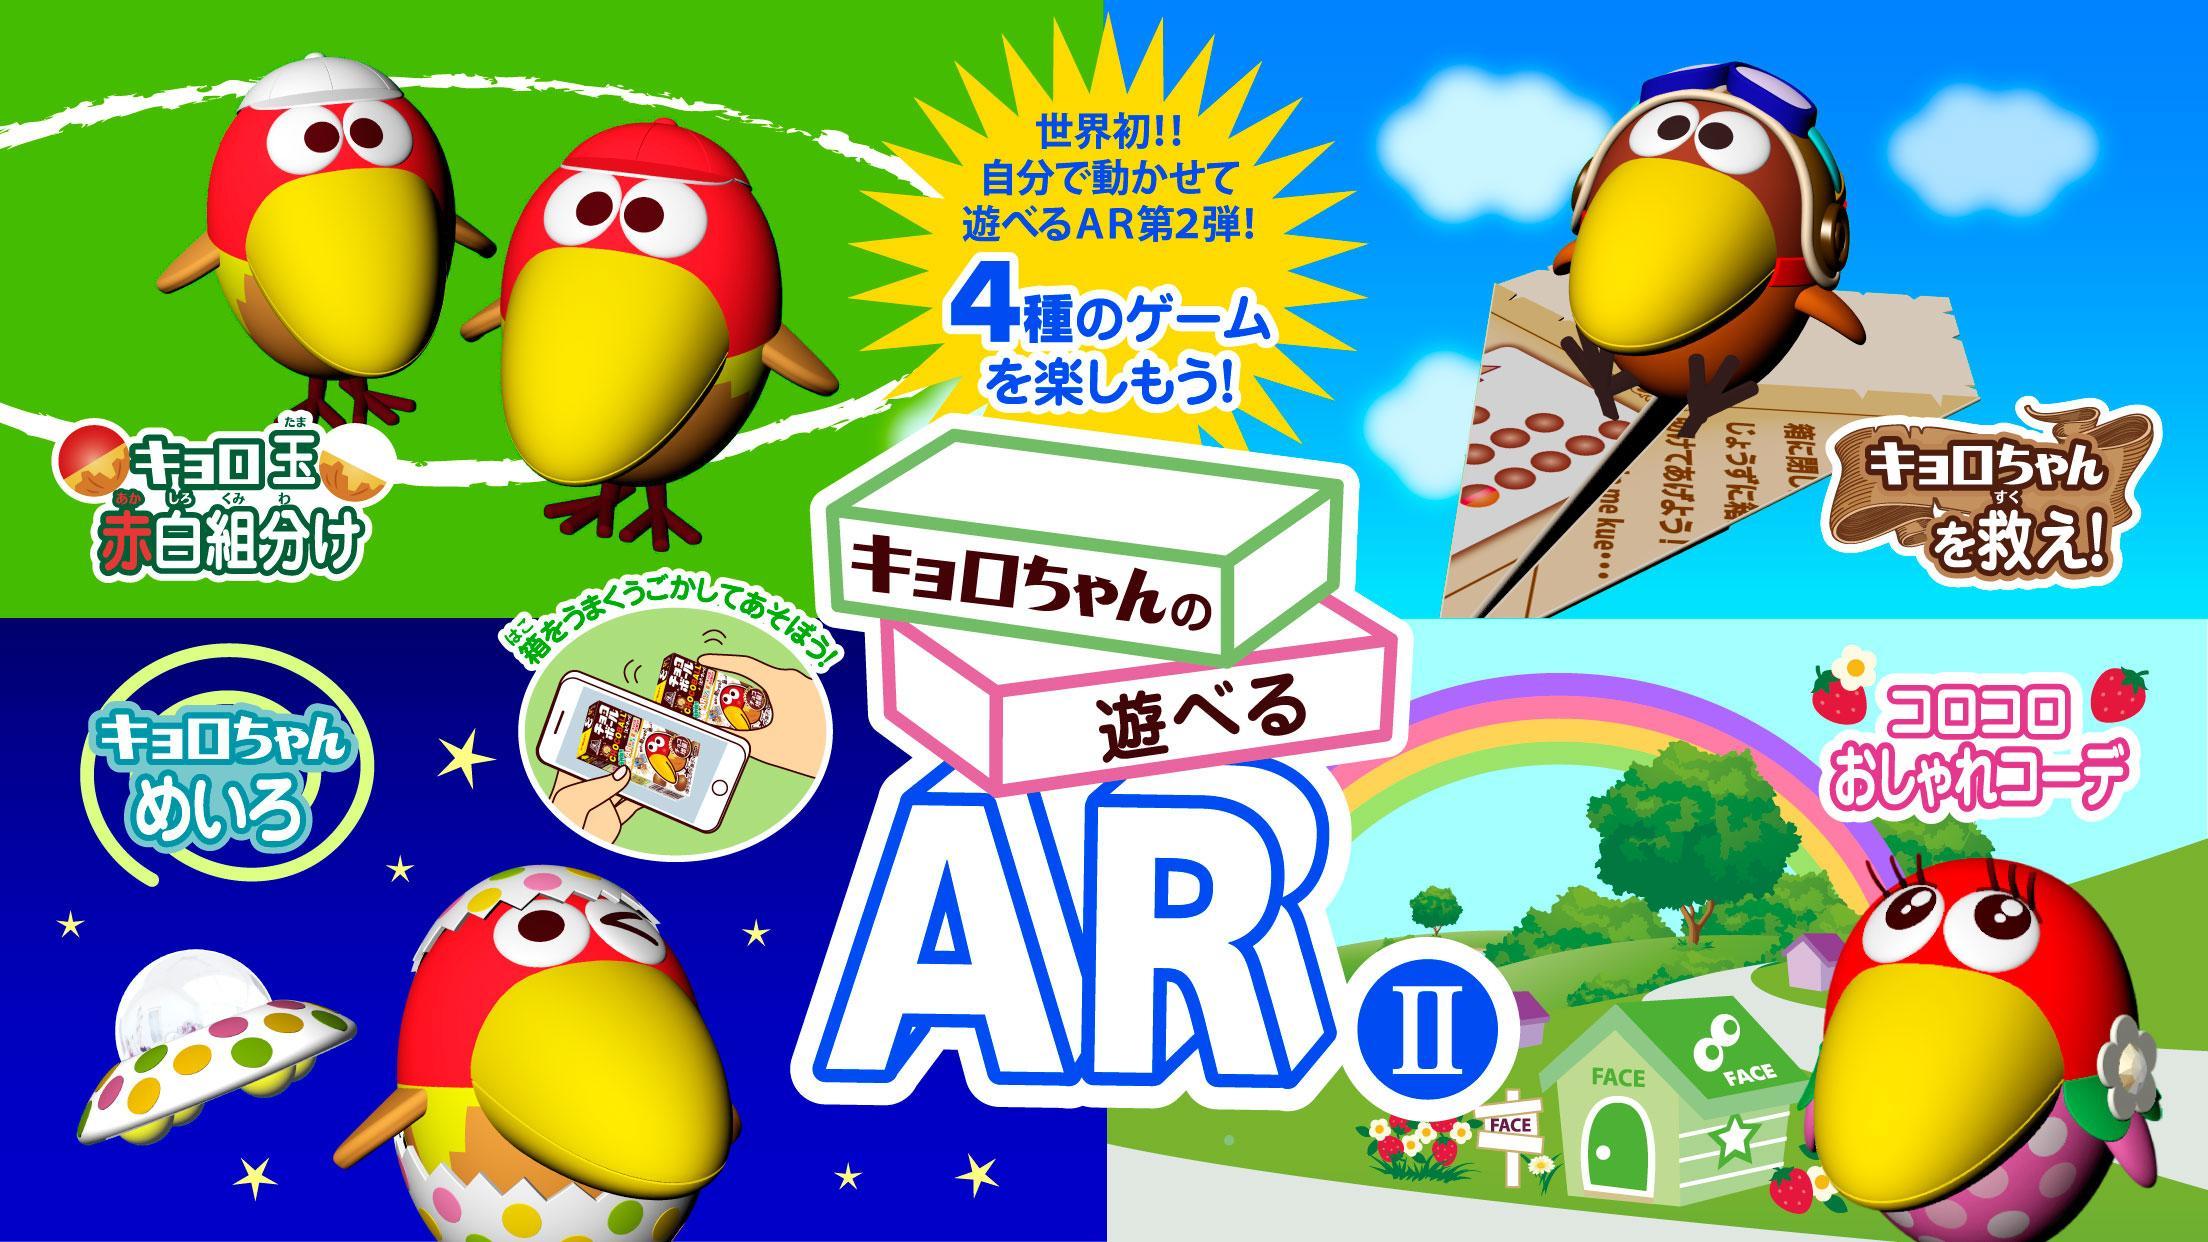 Screenshot 1 of Game AR II Kyoro-chan yang dapat dimainkan Gratis untuk dimainkan dengan sekotak bola cokelat 1.2